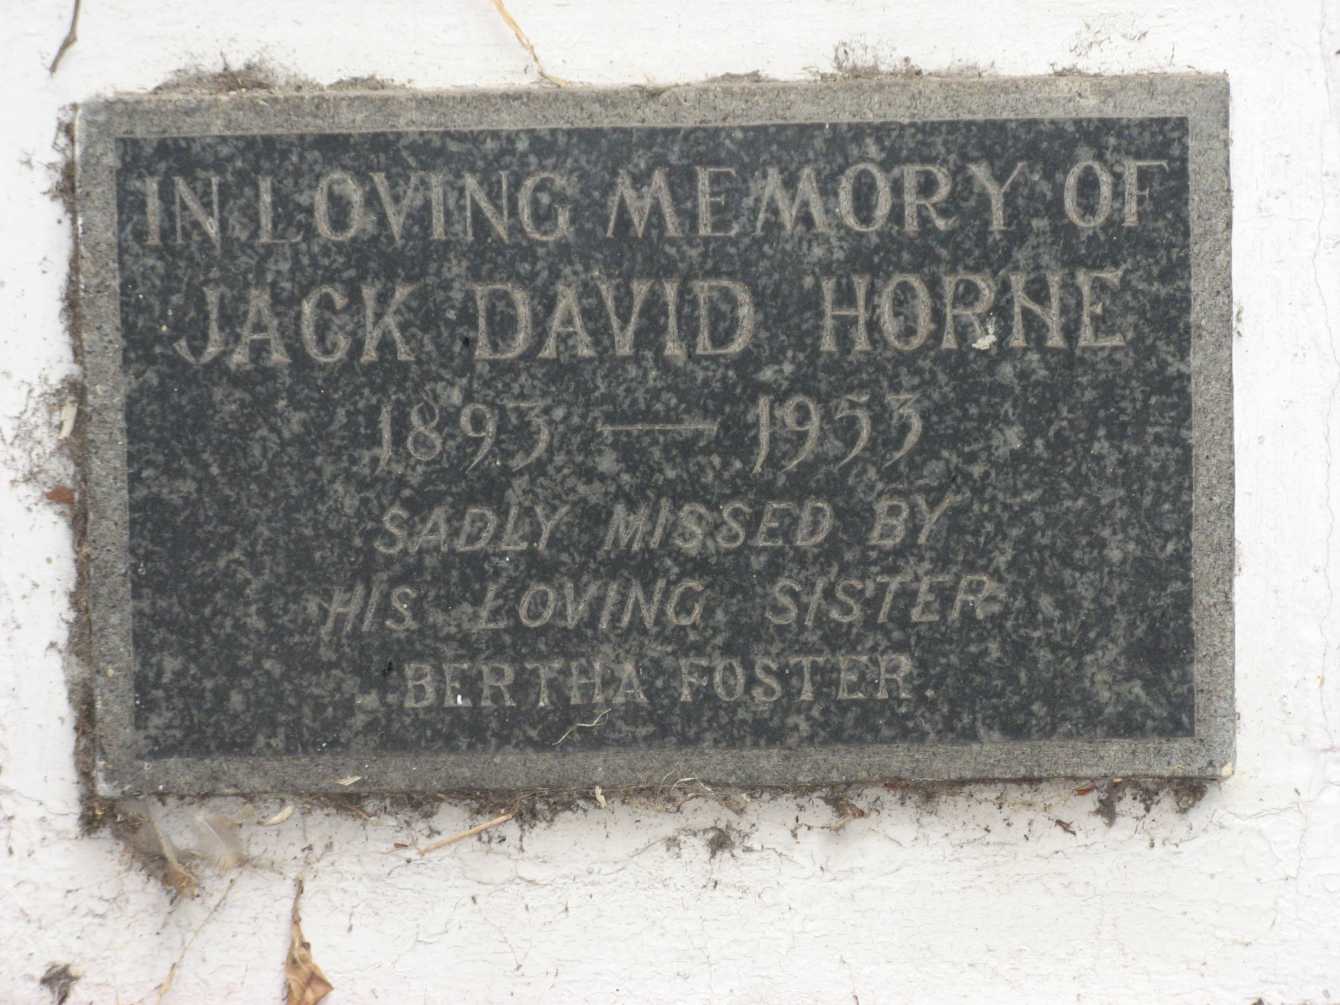 HORNE Jack David 1893-1955